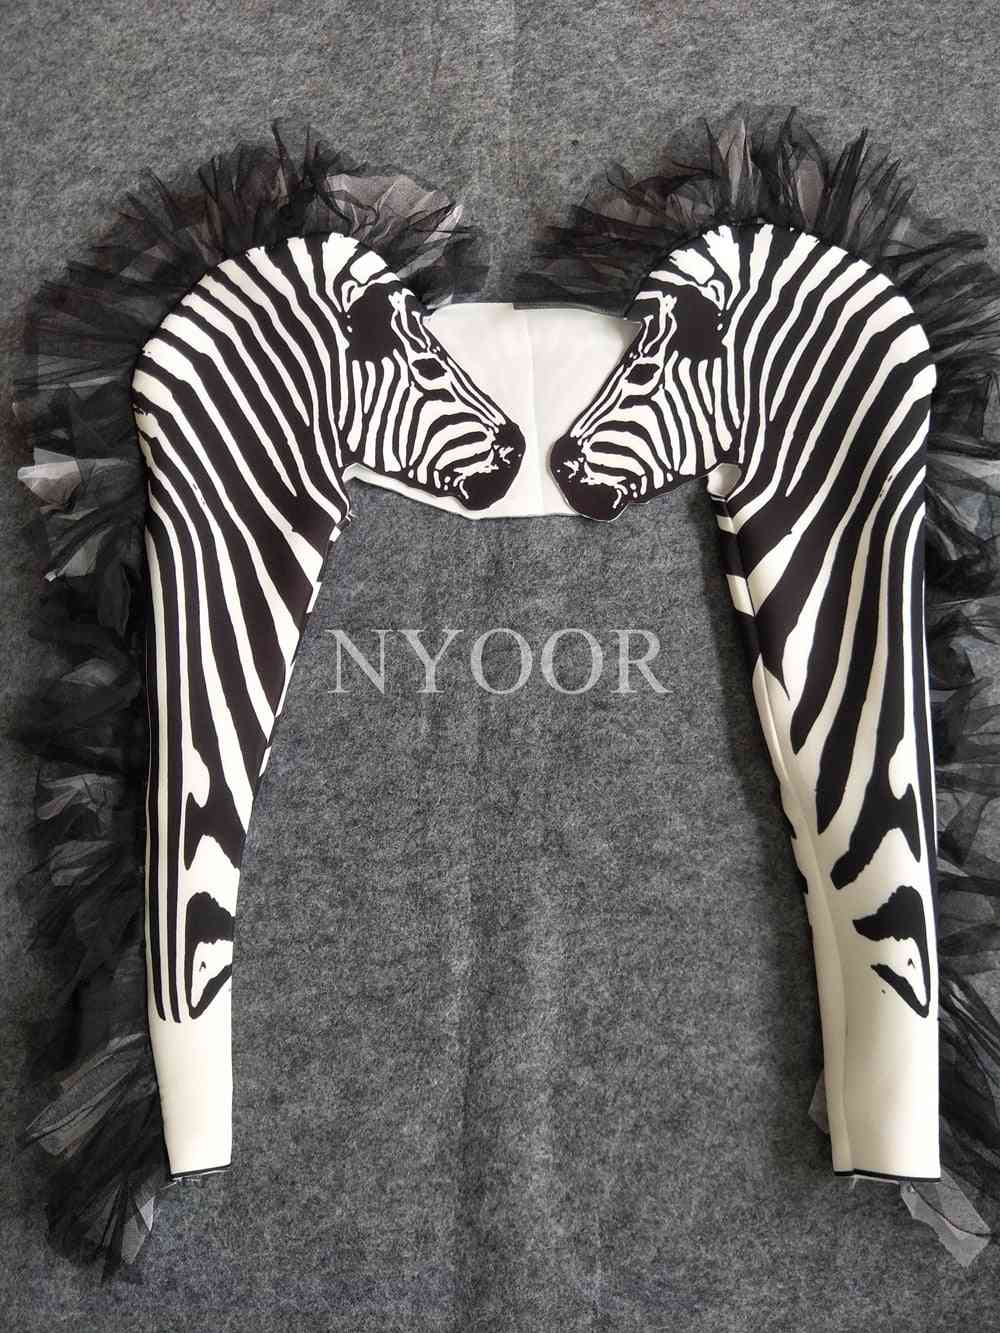 Modni zebra vzorec ženske pevke scenski outfit bar ds dance body